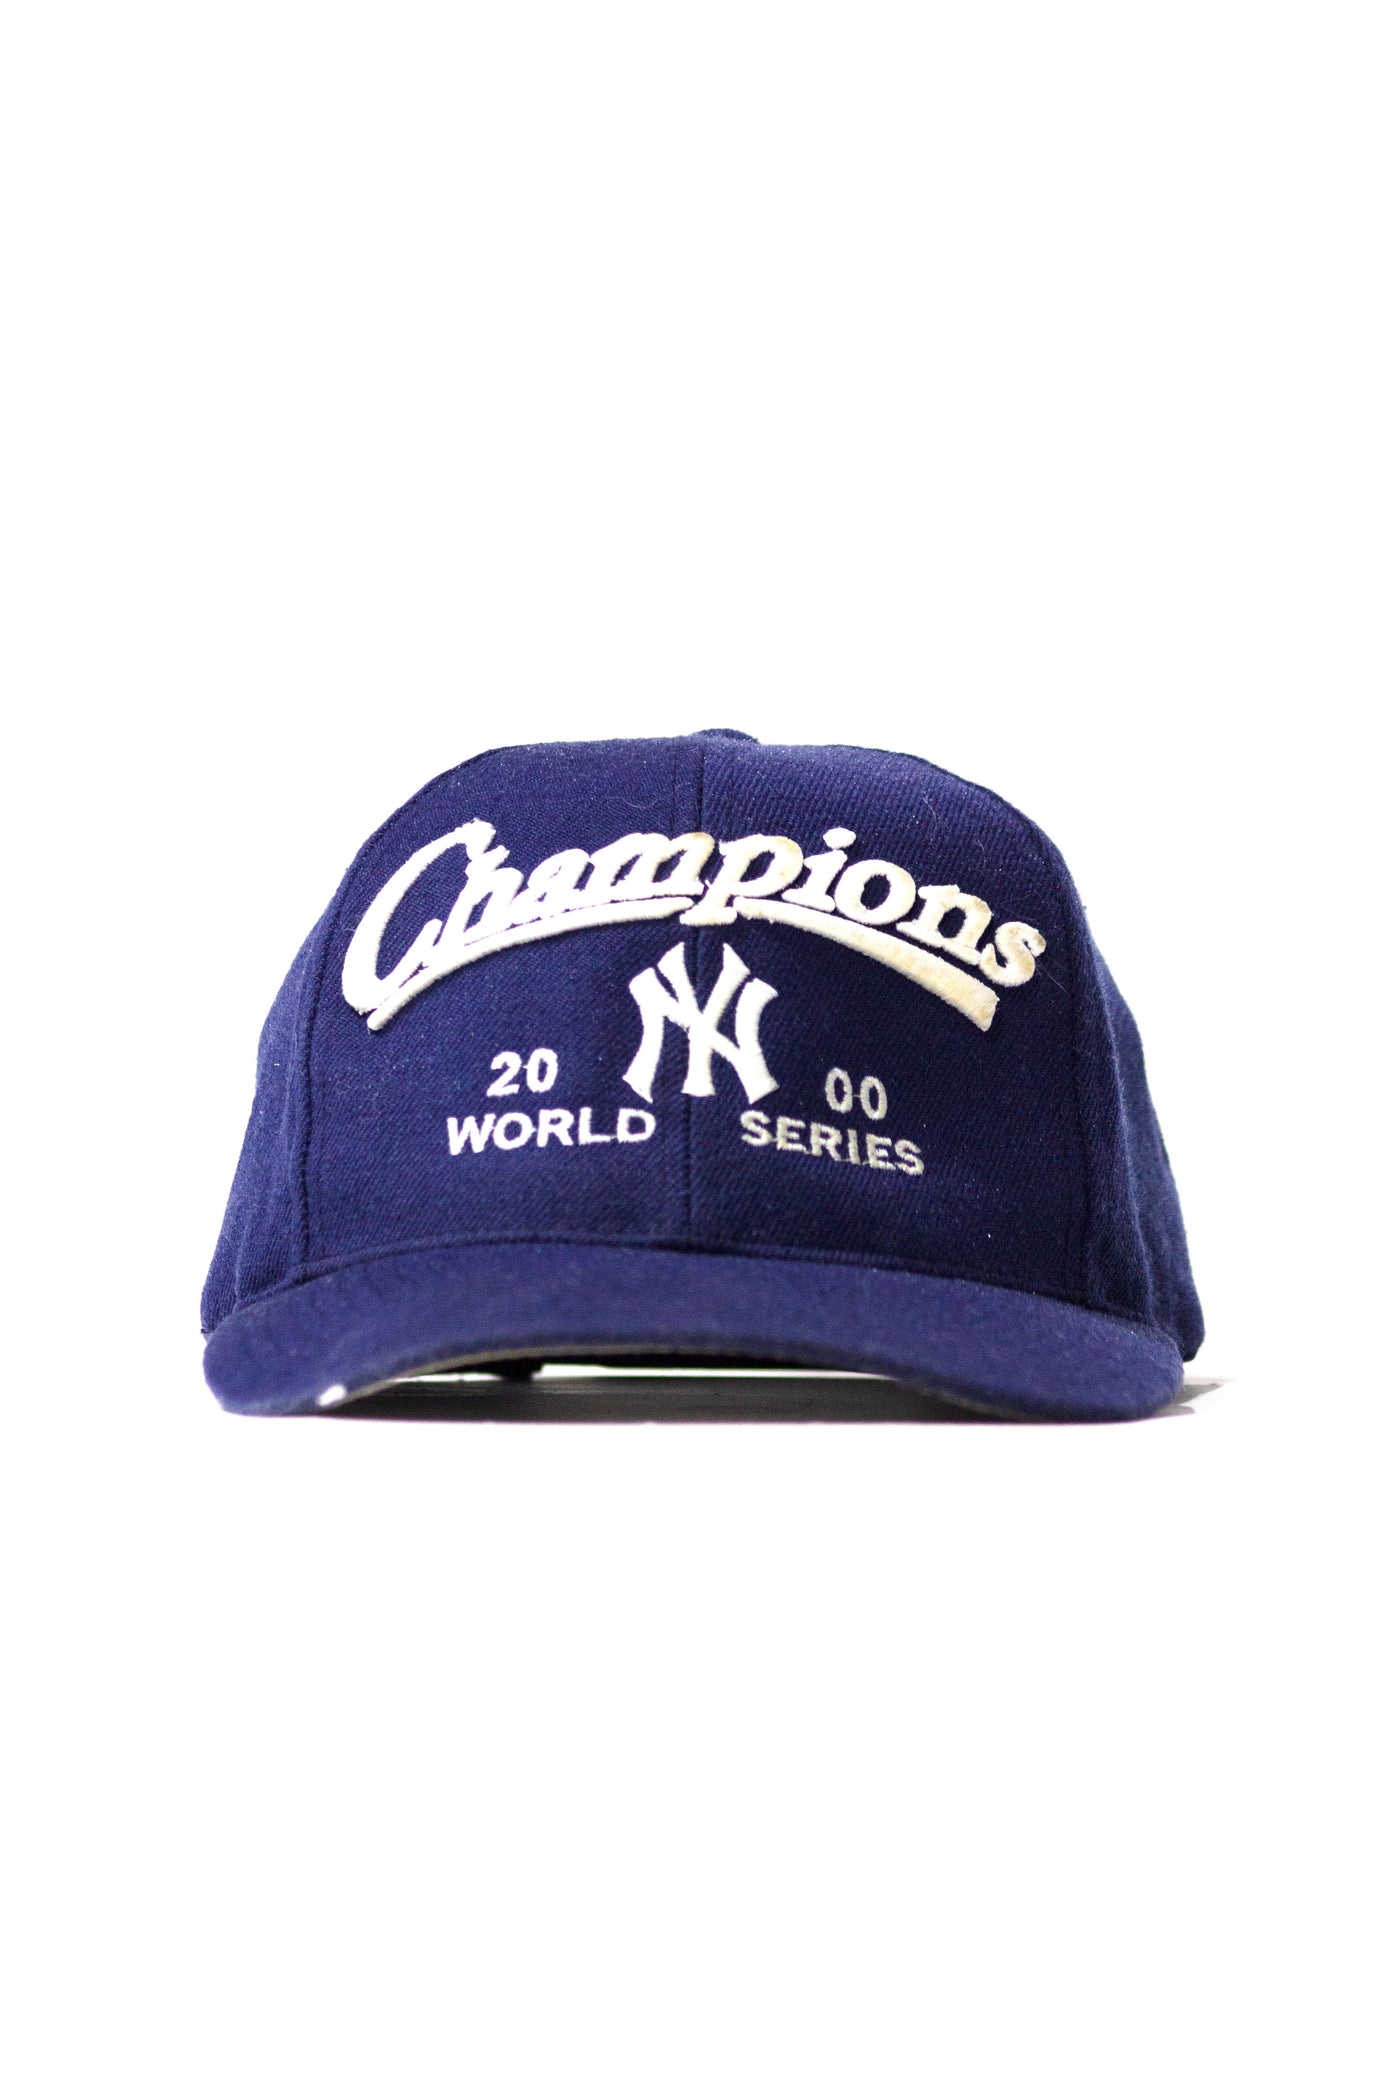 Vintage 2000 Yankees Champions Snapback